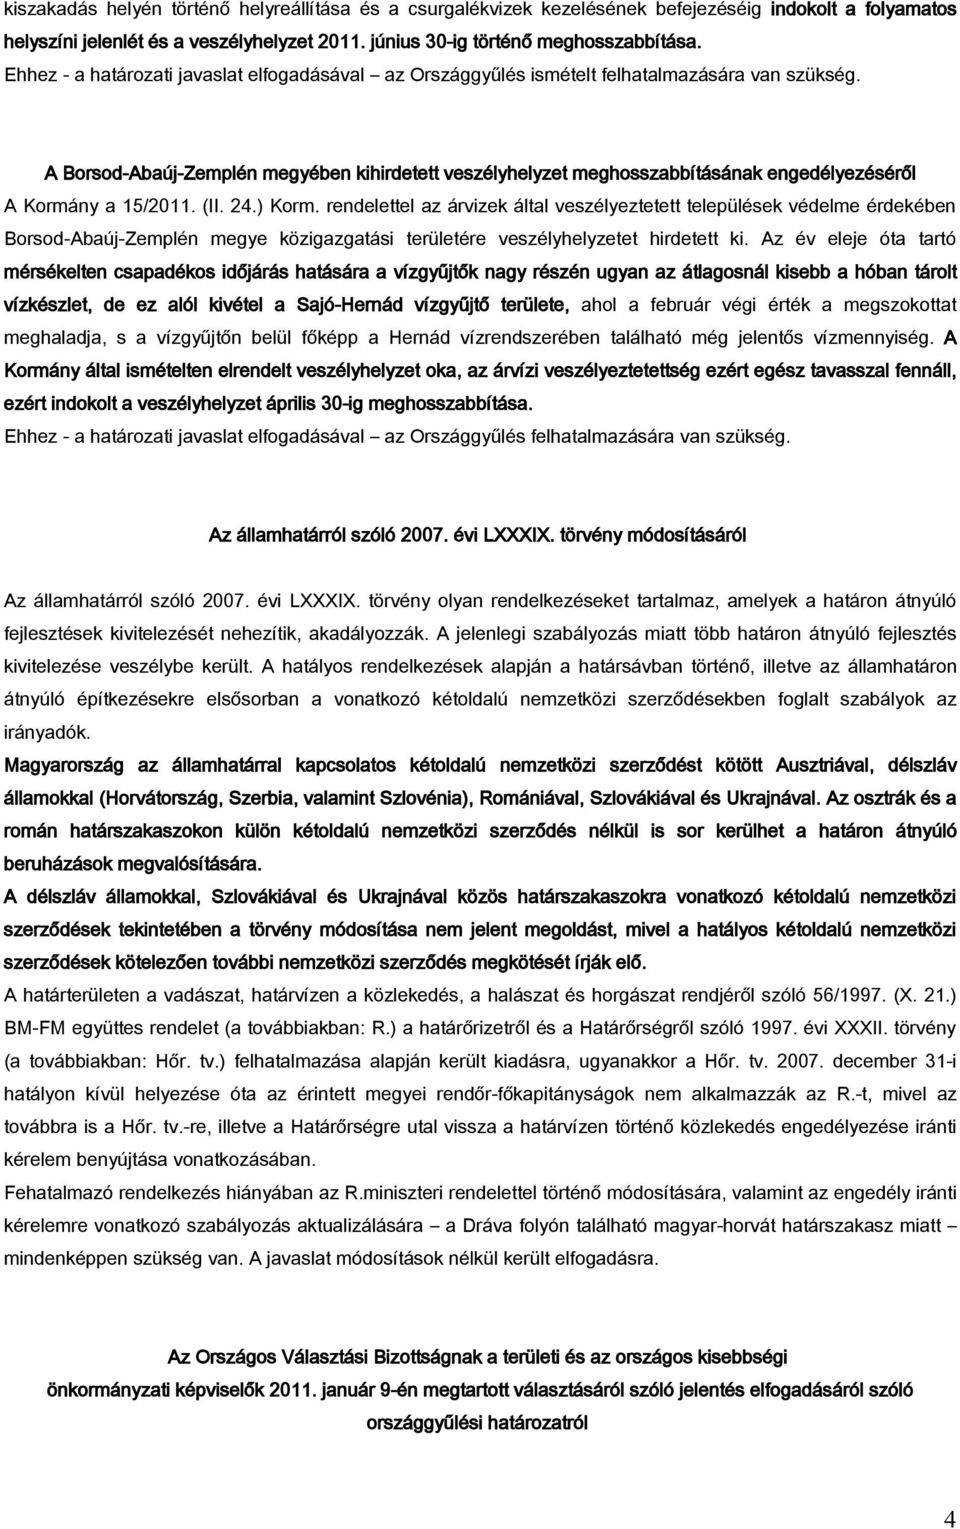 A Borsod-Abaúj-Zemplén megyében kihirdetett veszélyhelyzet meghosszabbításának engedélyezéséről A Kormány a 15/2011. (II. 24.) Korm.